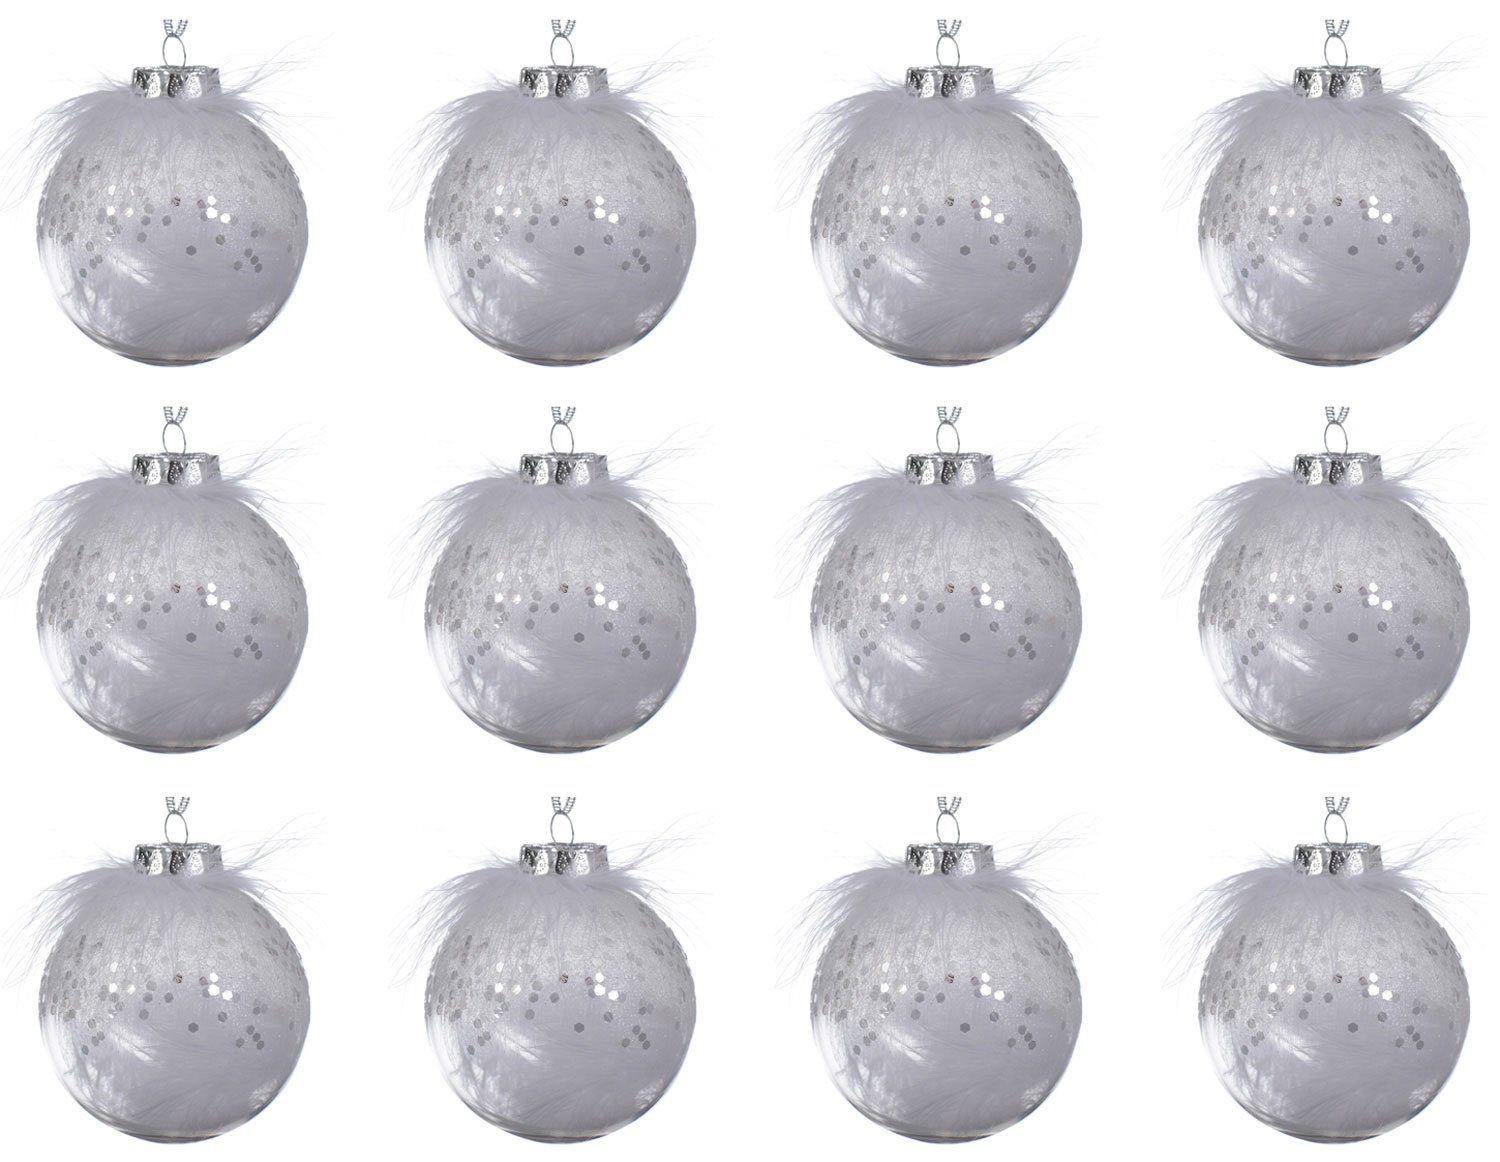 Decoris season decorations Christbaumschmuck, Weihnachtskugeln Kunststoff mit Federn 8cm klar transparent, 12er Set